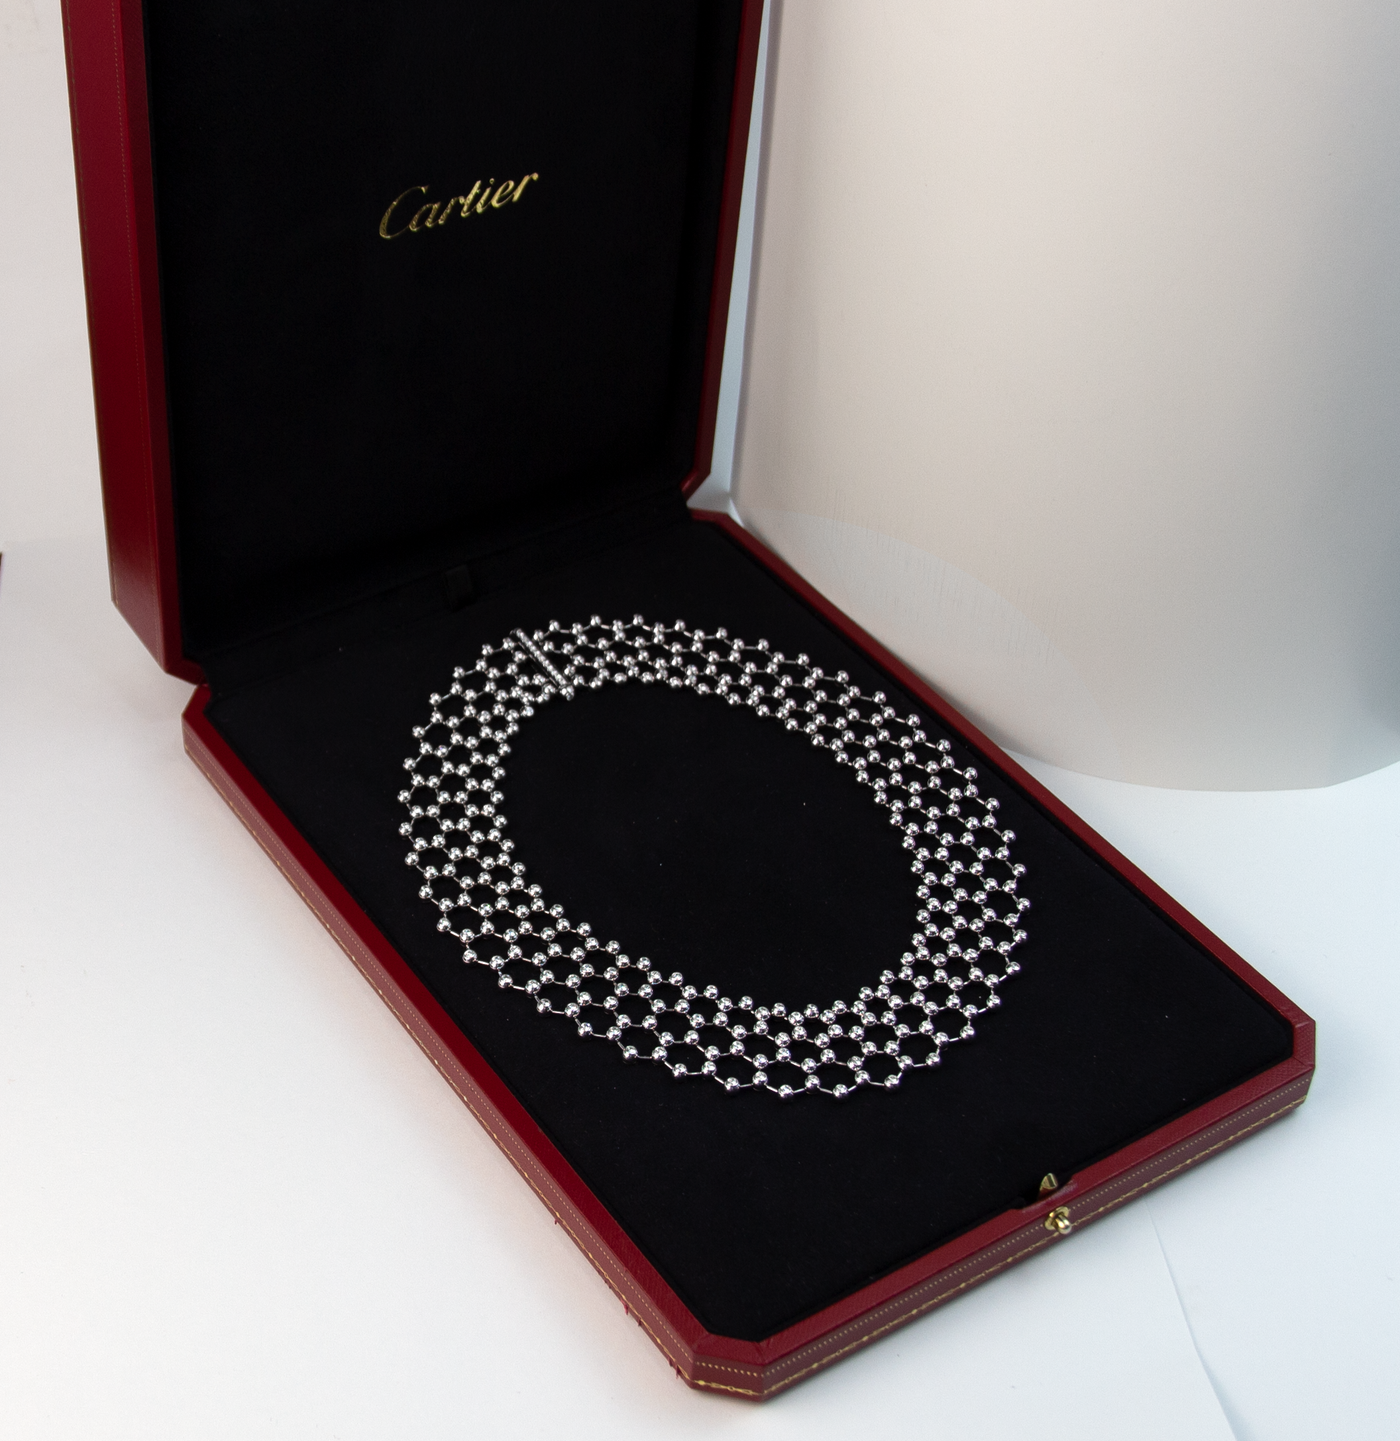 Cartier 18K White Gold Diamond "Perles de Diamants" Necklace